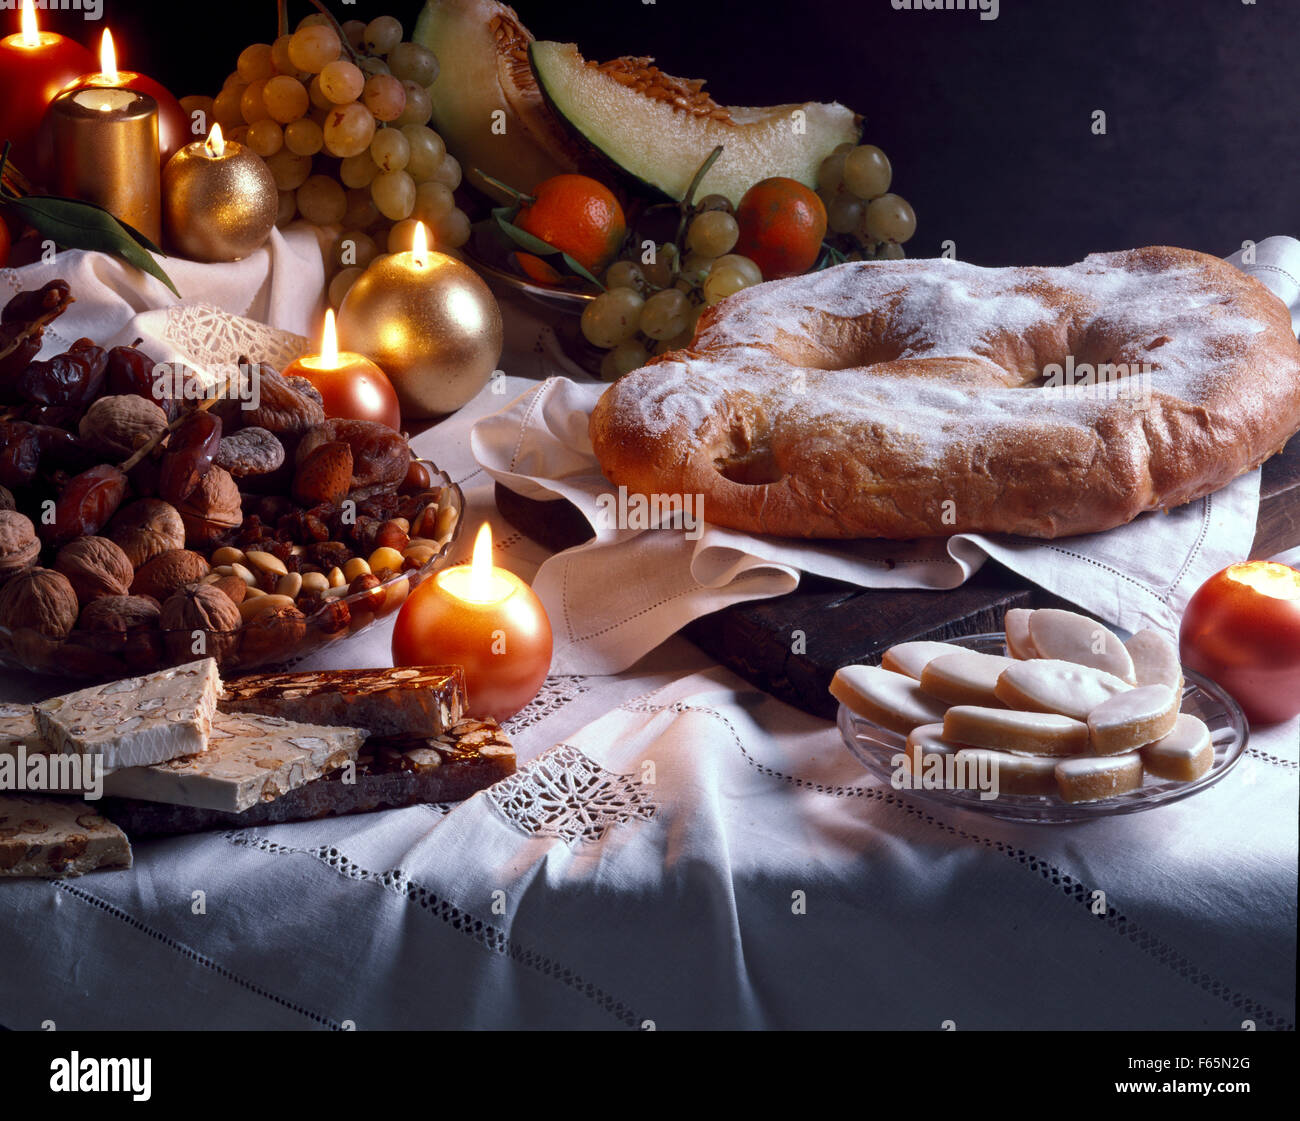 13 Weihnachten desserts Stockfoto